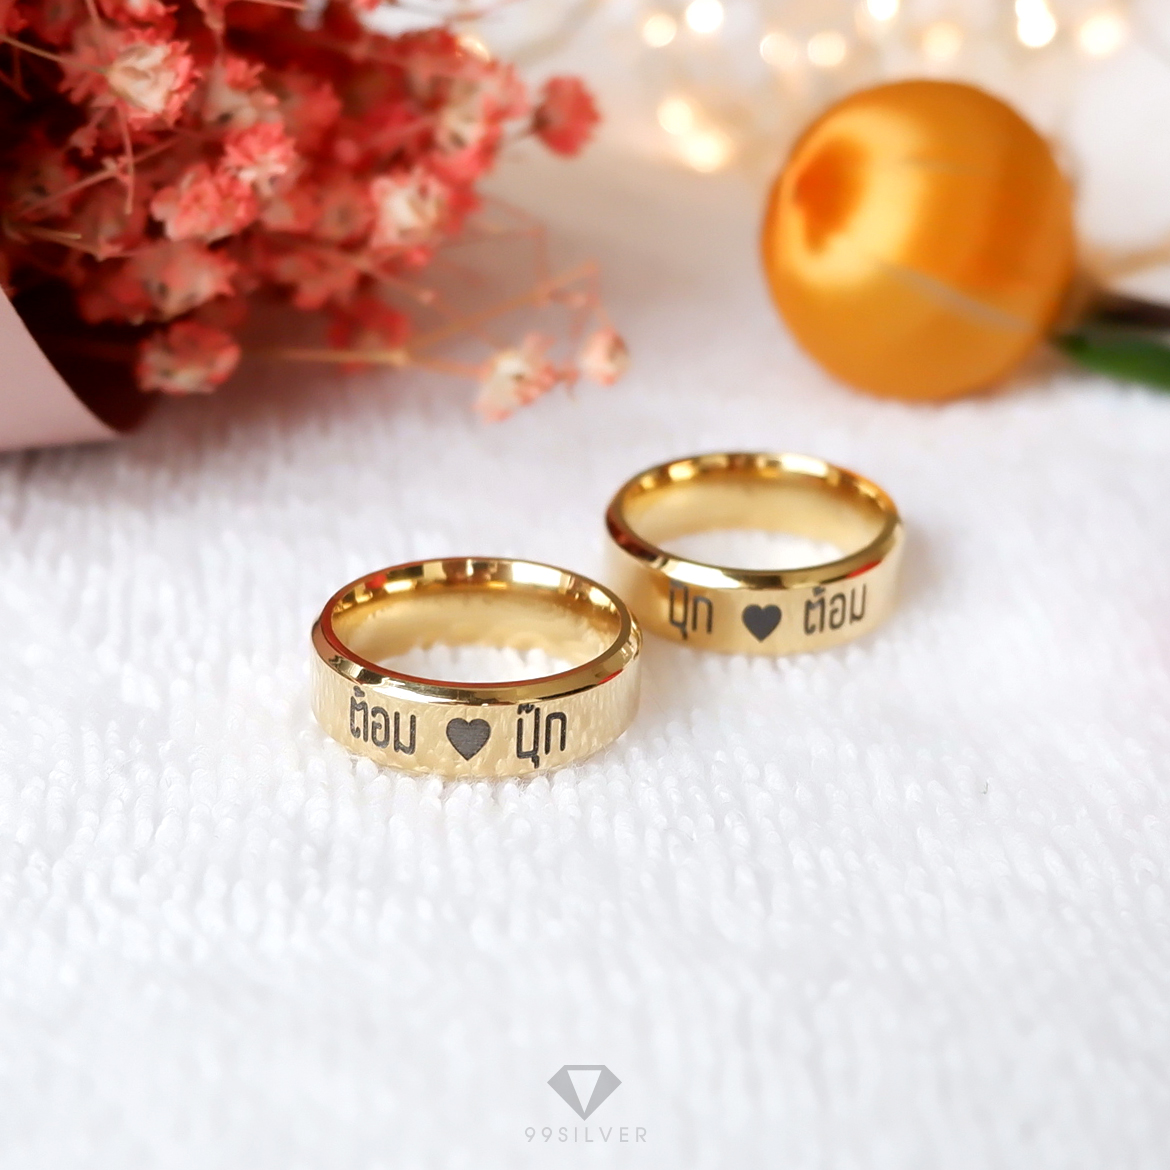 แหวนสแตนเลสแท้หน้ากว้าง 6 มิลลิเมตร ขอบลดมุมตัดสวยงาม ตัวเรือนสีทองเงา